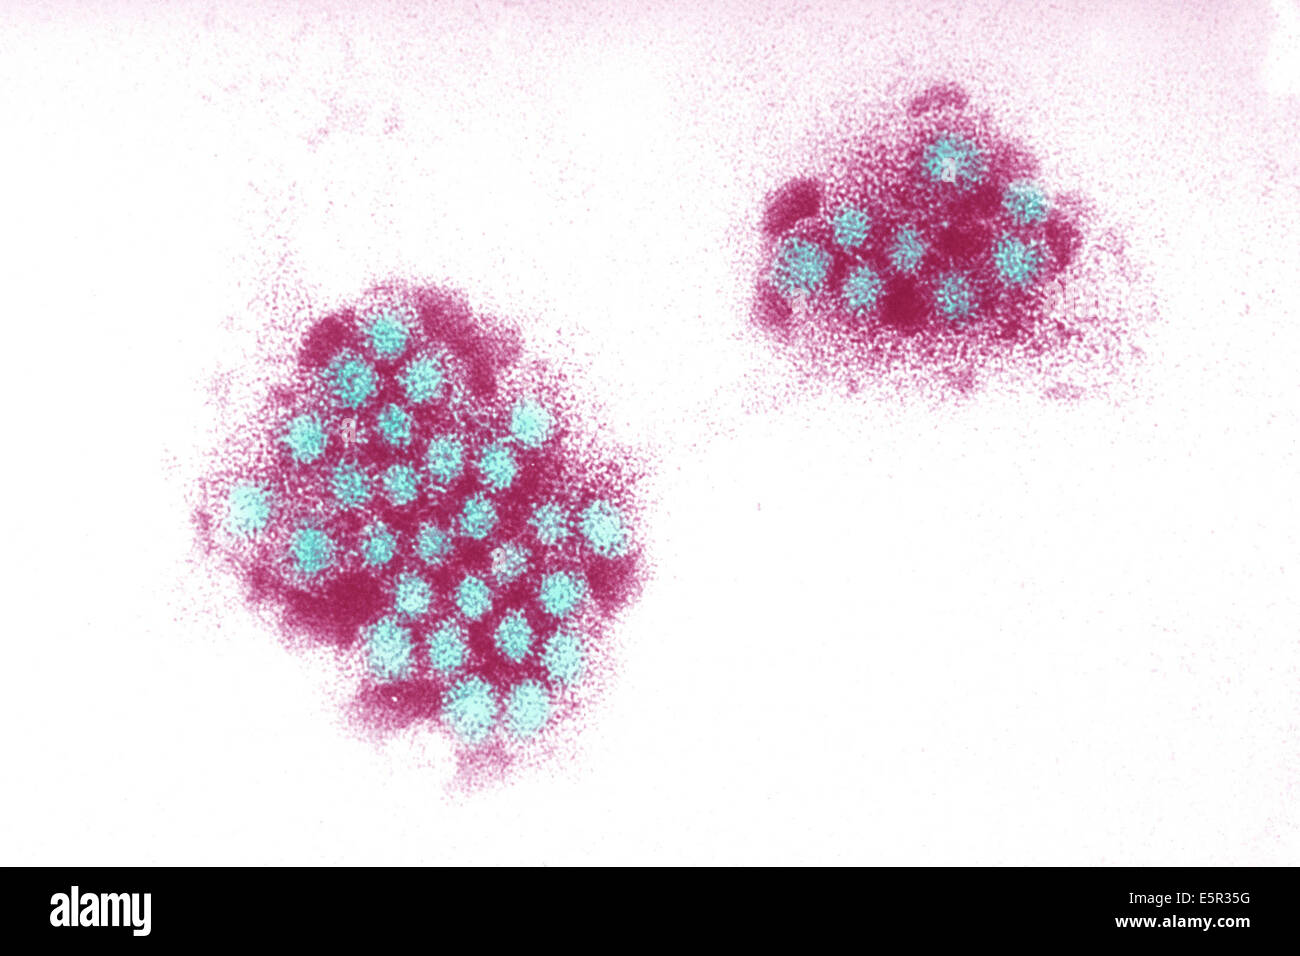 Elektron Schliffbild des Norwalk Virus, ein RNA-Virus der Gattung Norovirus (Caliciviridae) verantwortlich für Gastroenteritis. Stockfoto